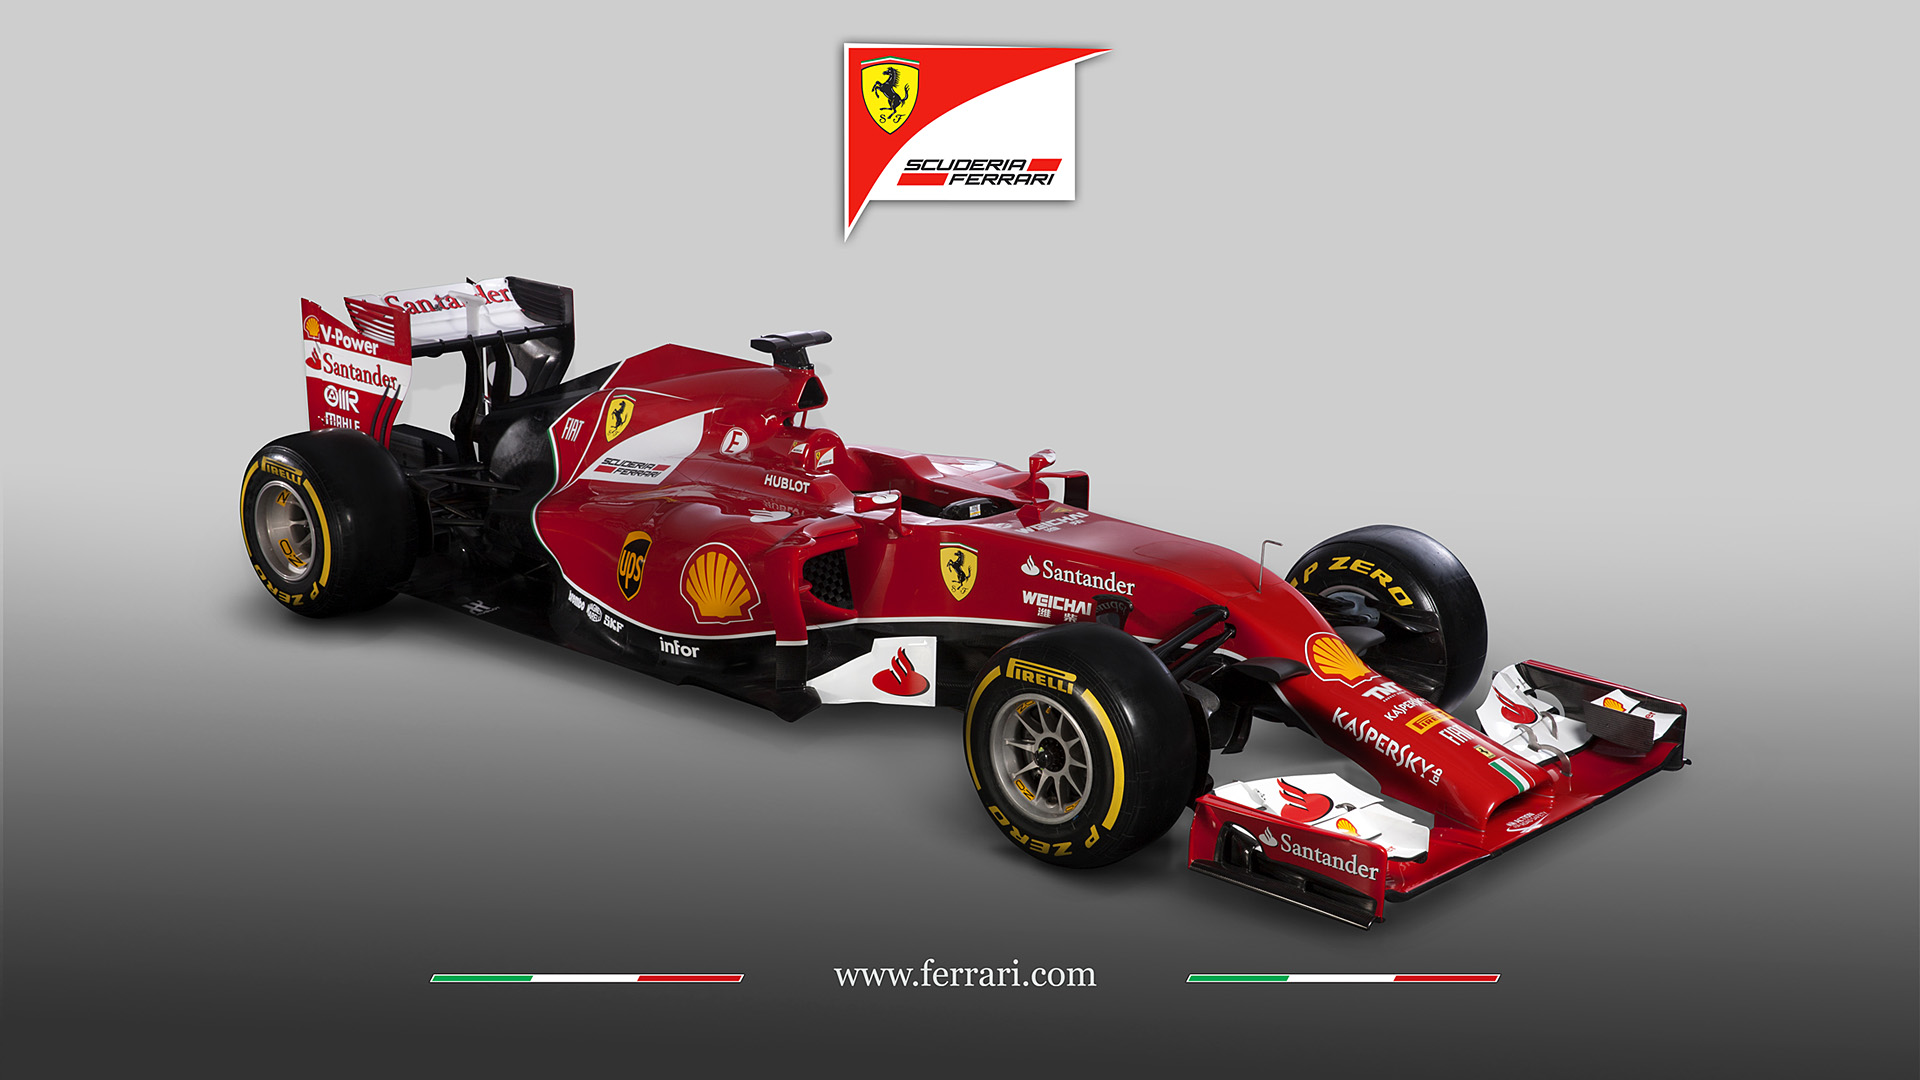  2014 Ferrari F14 T Wallpaper.